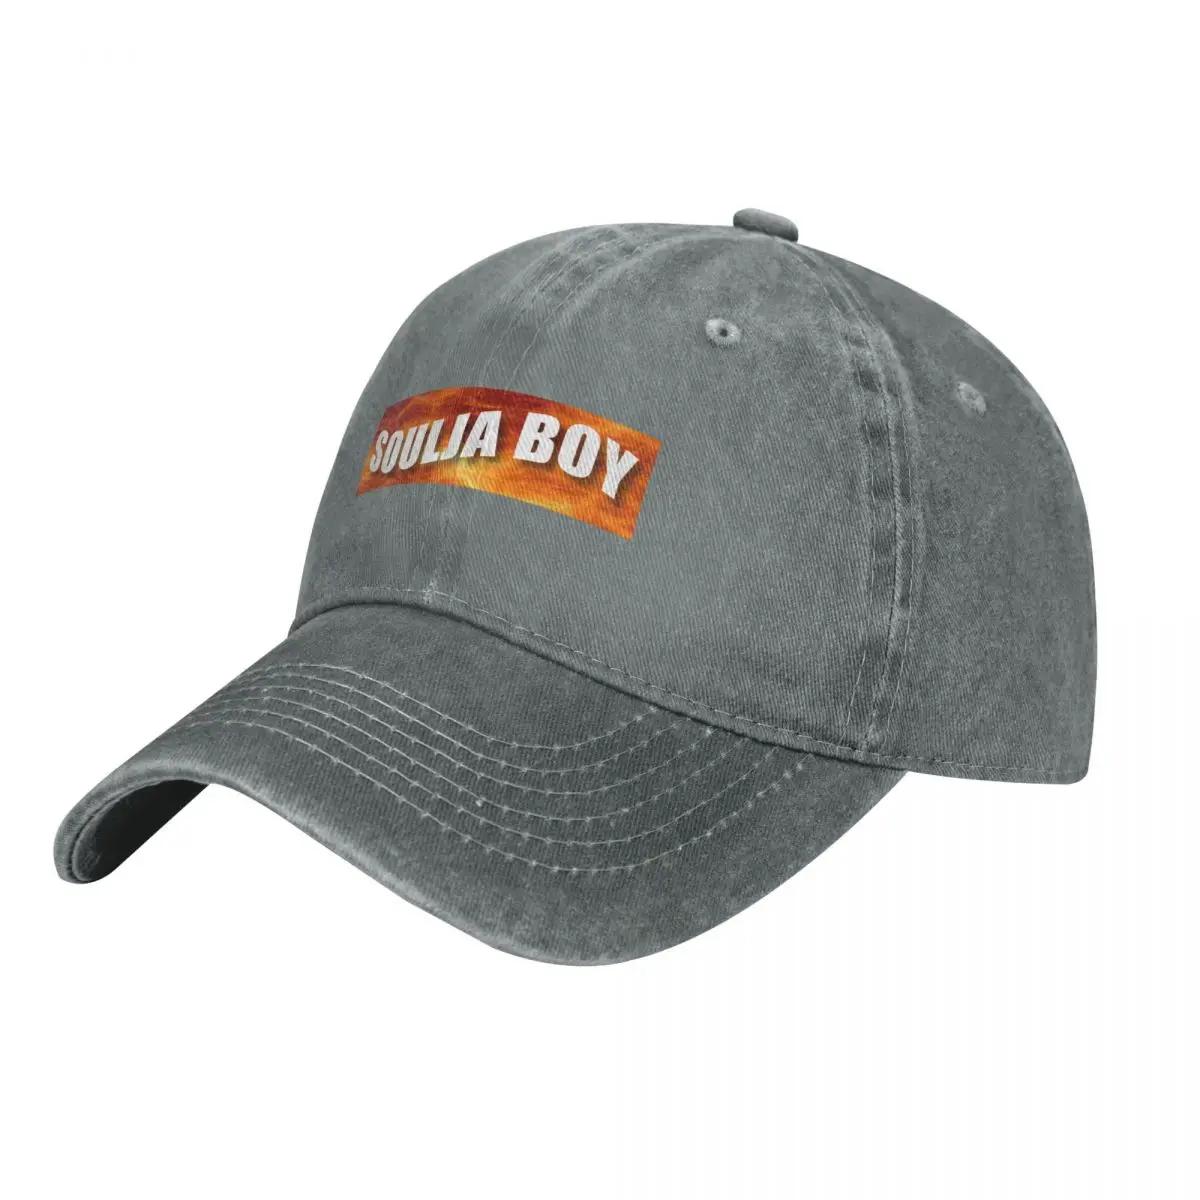 Ковбойская шляпа soulja boy, новая в шляпе, шапка с капюшоном для альпинизма, мужская Женская